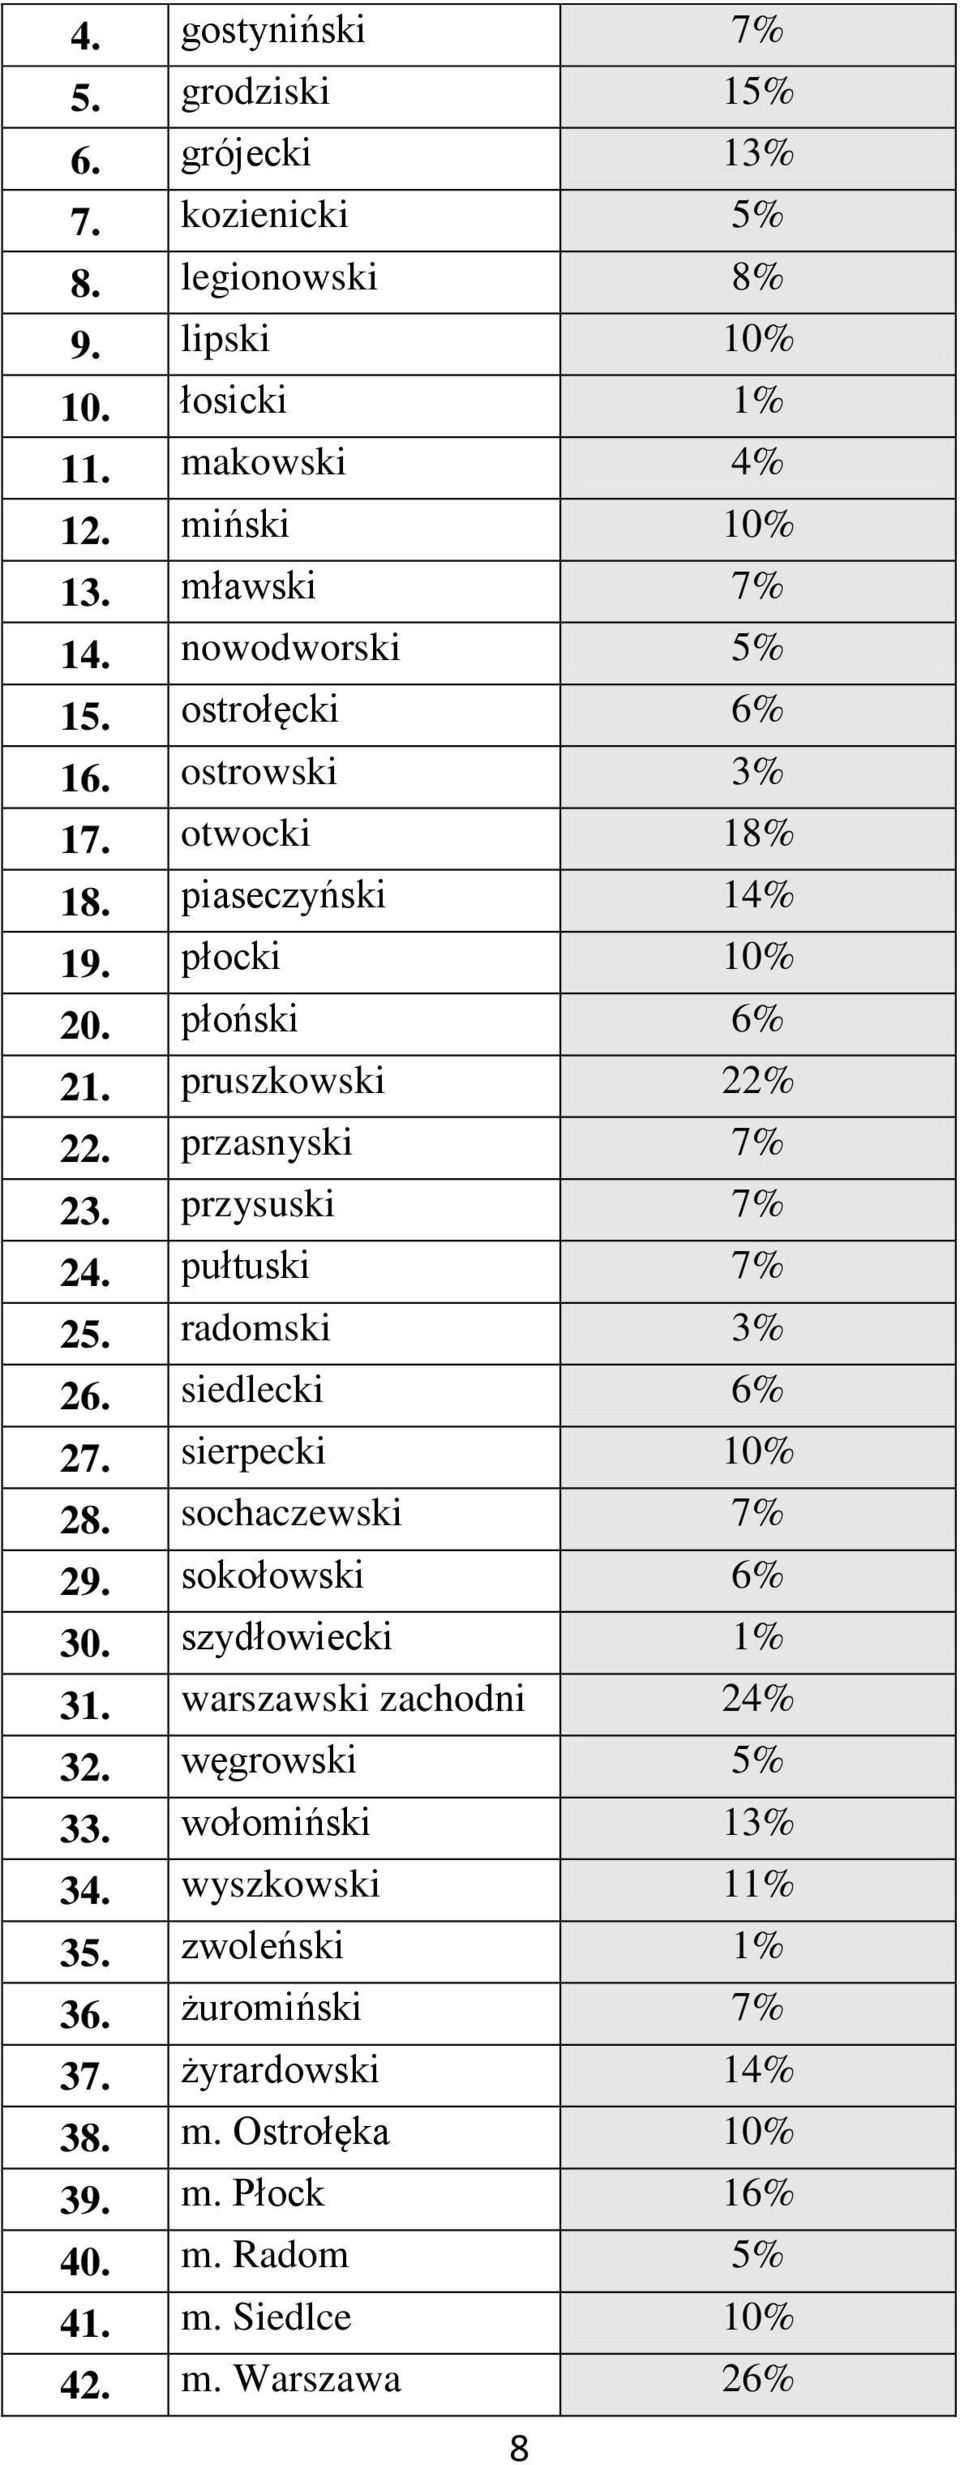 przysuski 7% 24. pułtuski 7% 25. radomski 3% 26. siedlecki 6% 27. sierpecki 10% 28. sochaczewski 7% 29. sokołowski 6% 30. szydłowiecki 1% 31. warszawski zachodni 24% 32.